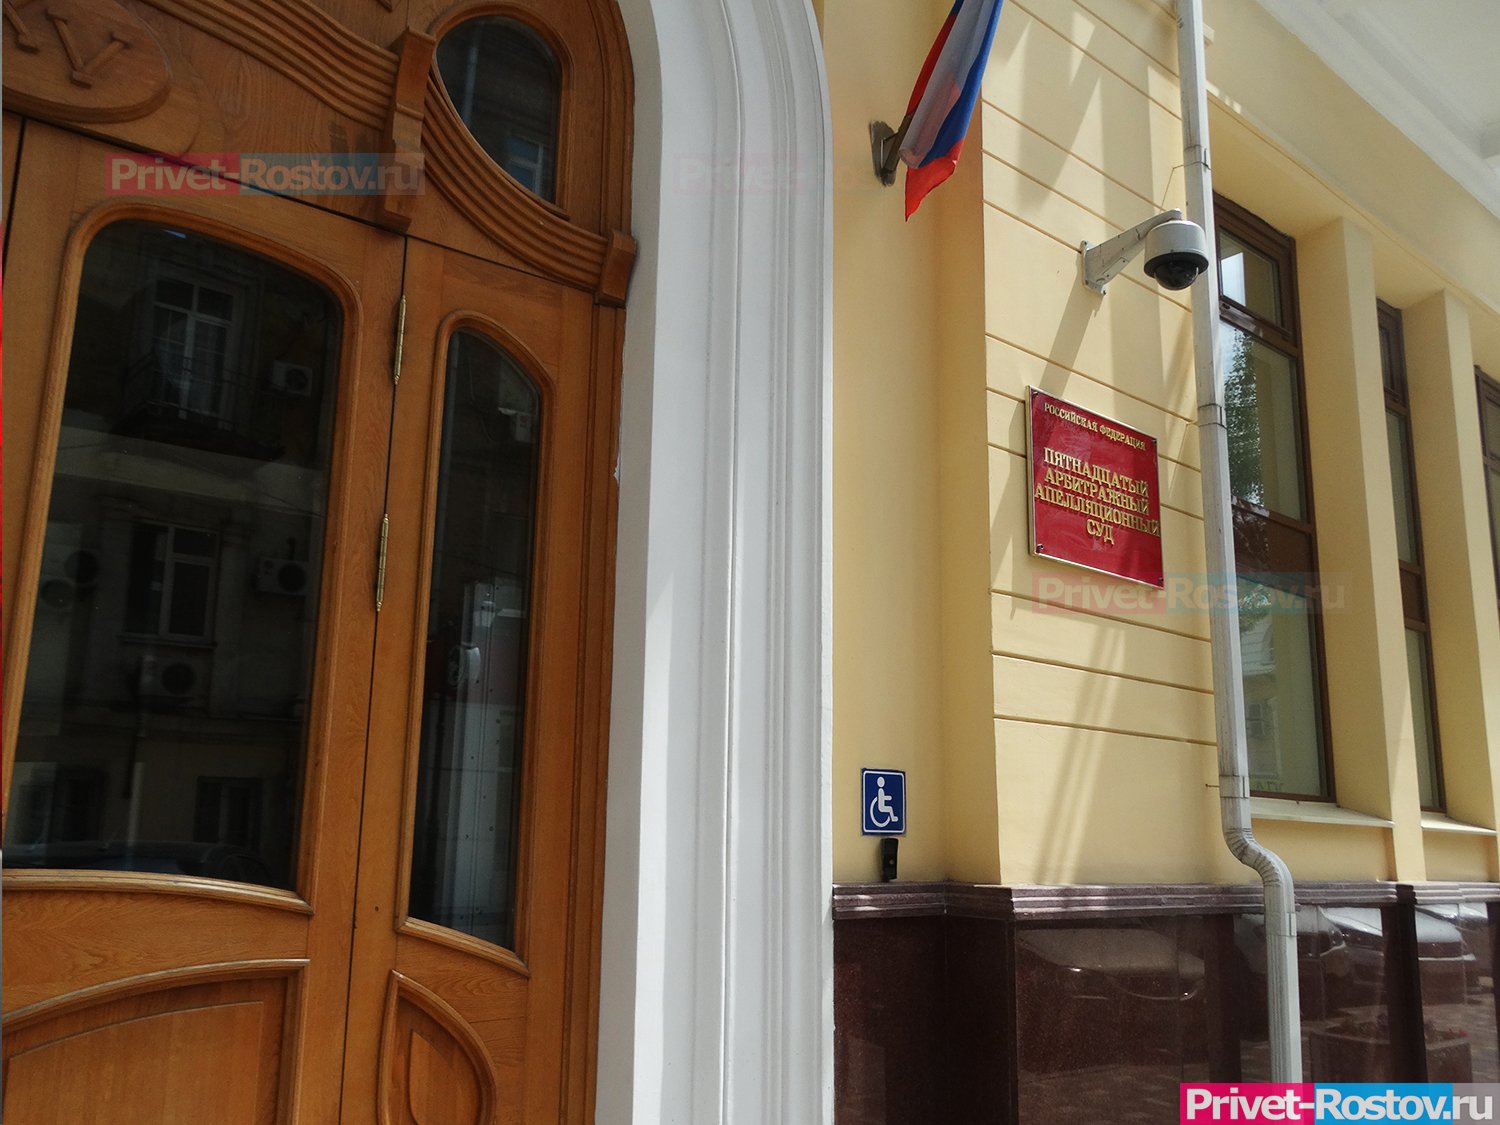 Президент РФ Путин назначил судью и зампредседателя суда в Ростовской области